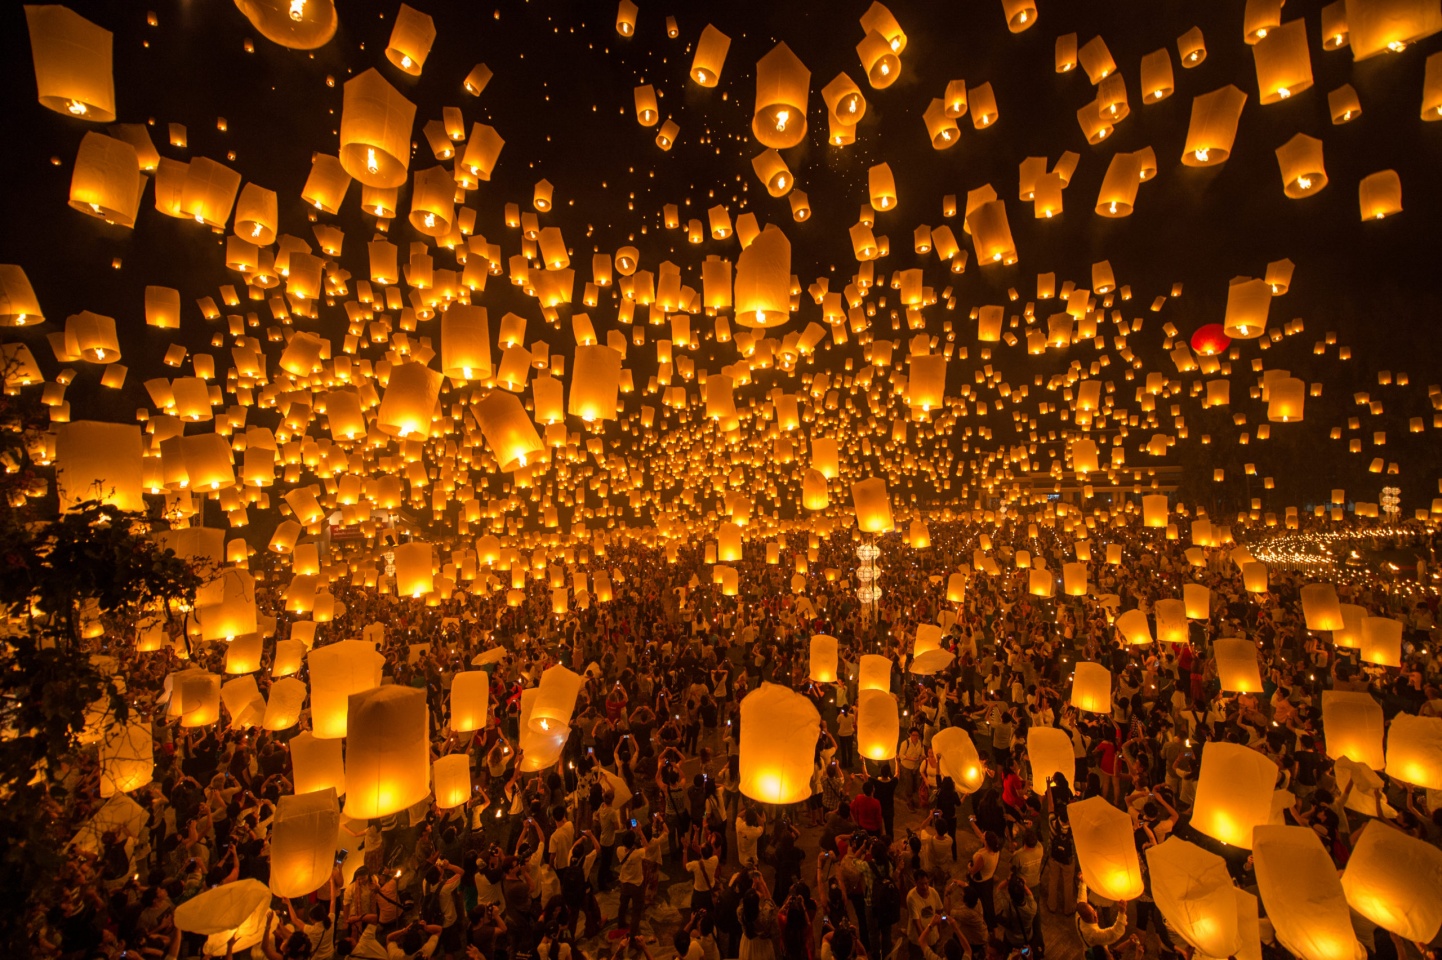 Il suggestivo Festival delle Lanterne in Thailandia.